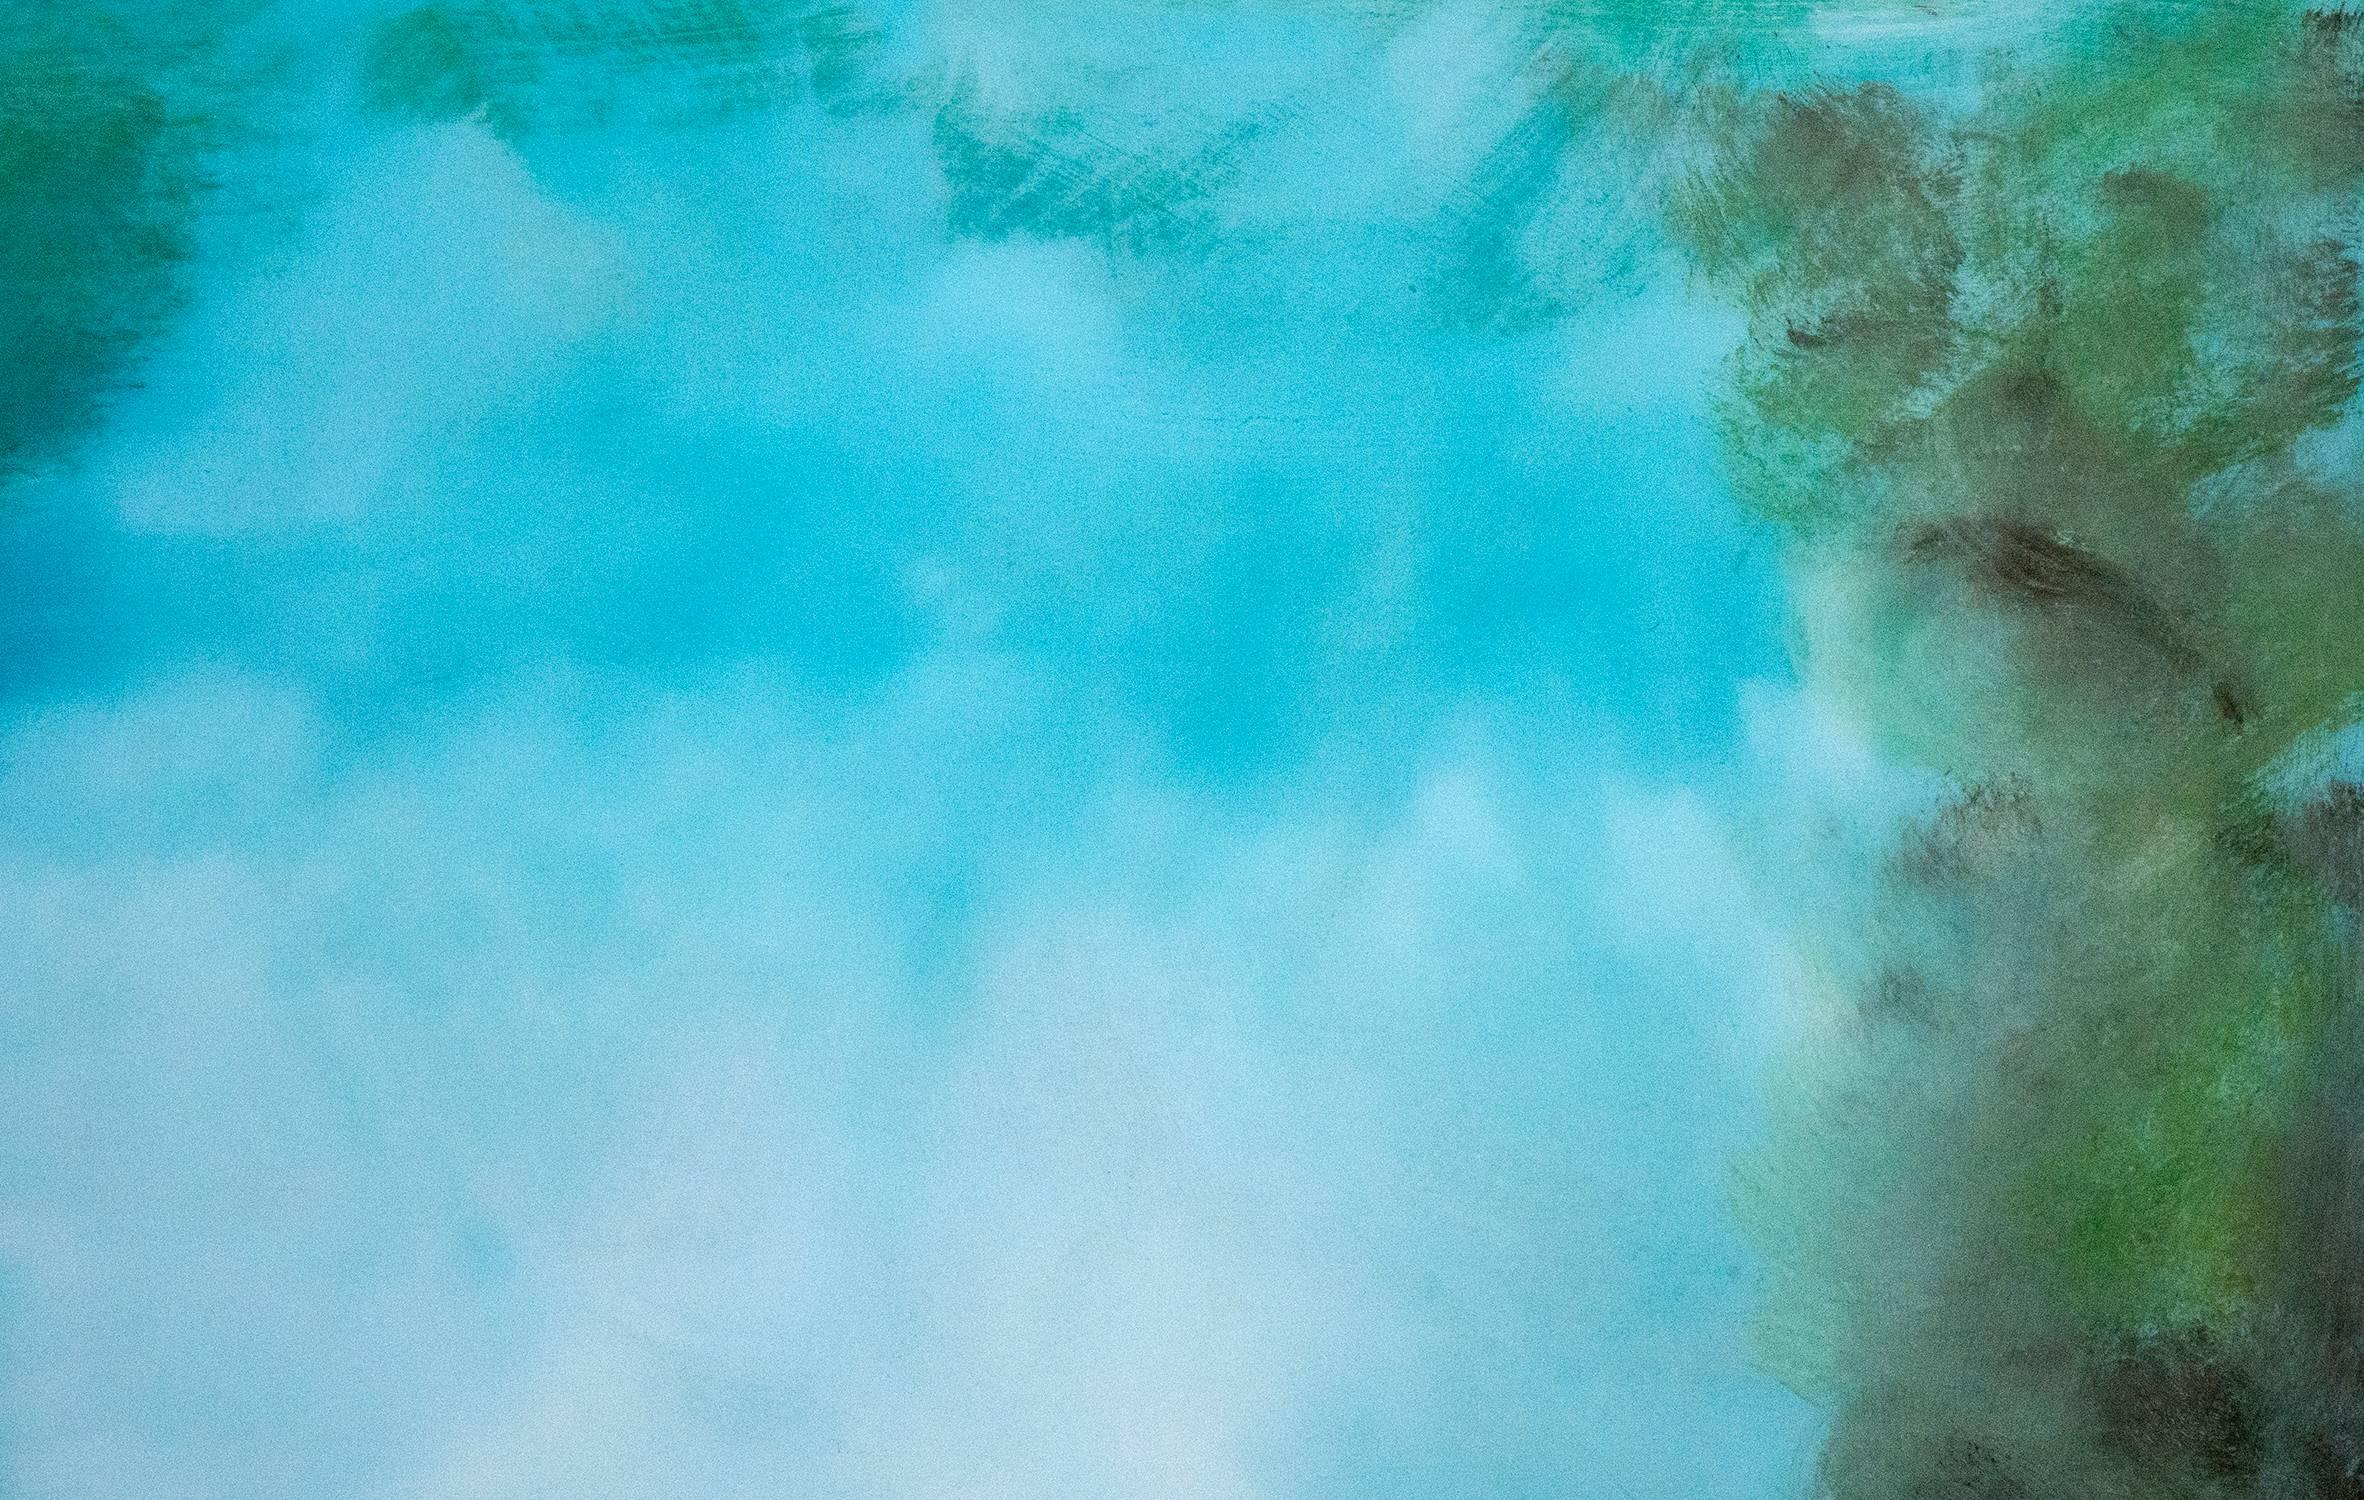 Une ouverture brillante encadrée de vert-bleu se reflétant dans l'eau en dessous brûle à travers un ciel azur dans cette peinture lumineuse et lunatique de Jay Hodgins. L'artiste applique des couches d'acrylique qui sont recouvertes d'une résine